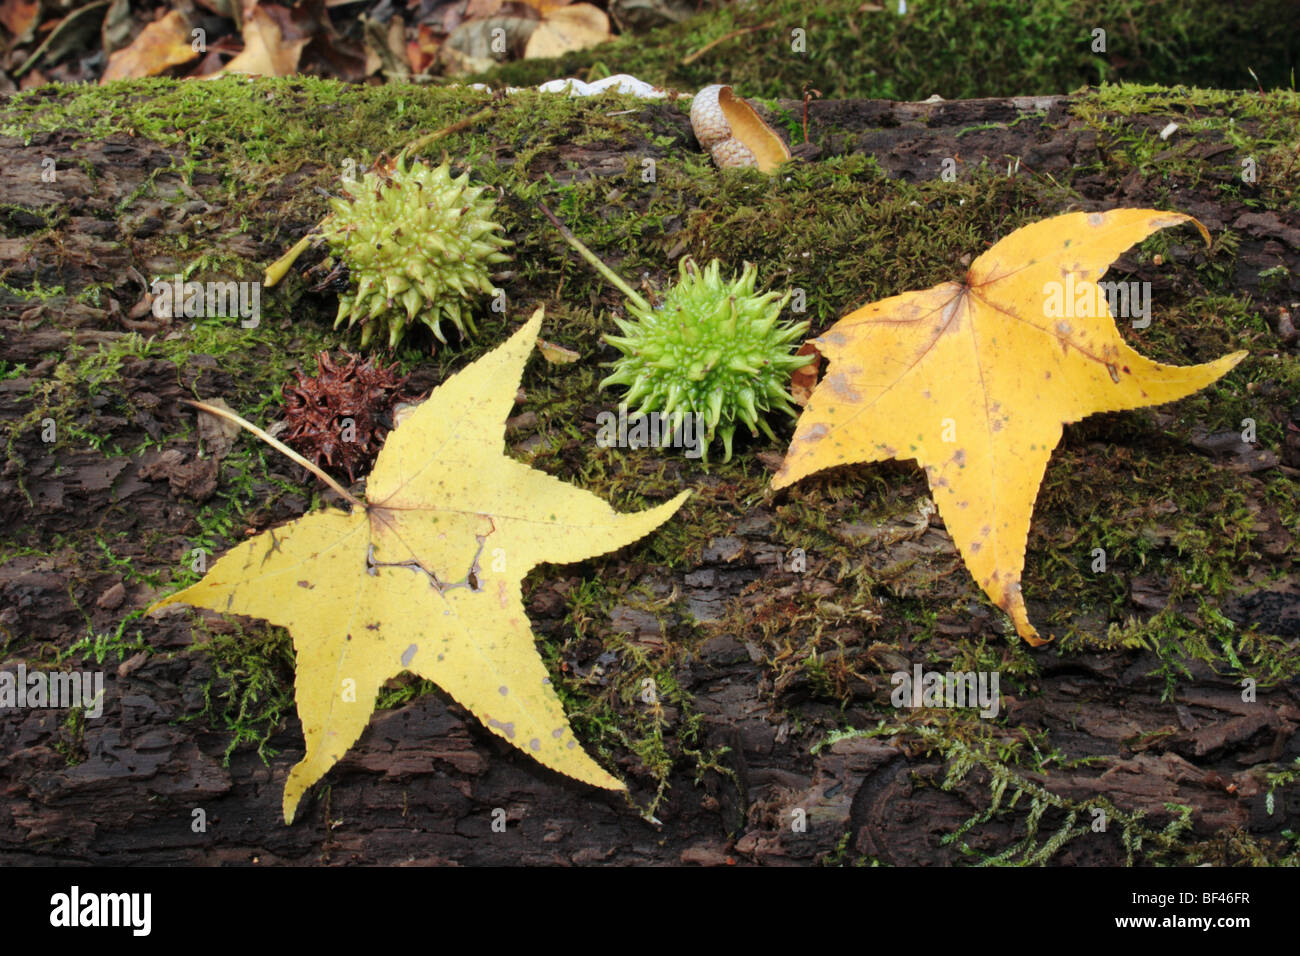 Amberbaum (Liquidambar Styracuflus) Blätter und Früchte. Die grüne Frucht  wird mit zunehmendem Alter dunkler. Osten der Vereinigten Staaten Laubbaum  Stockfotografie - Alamy